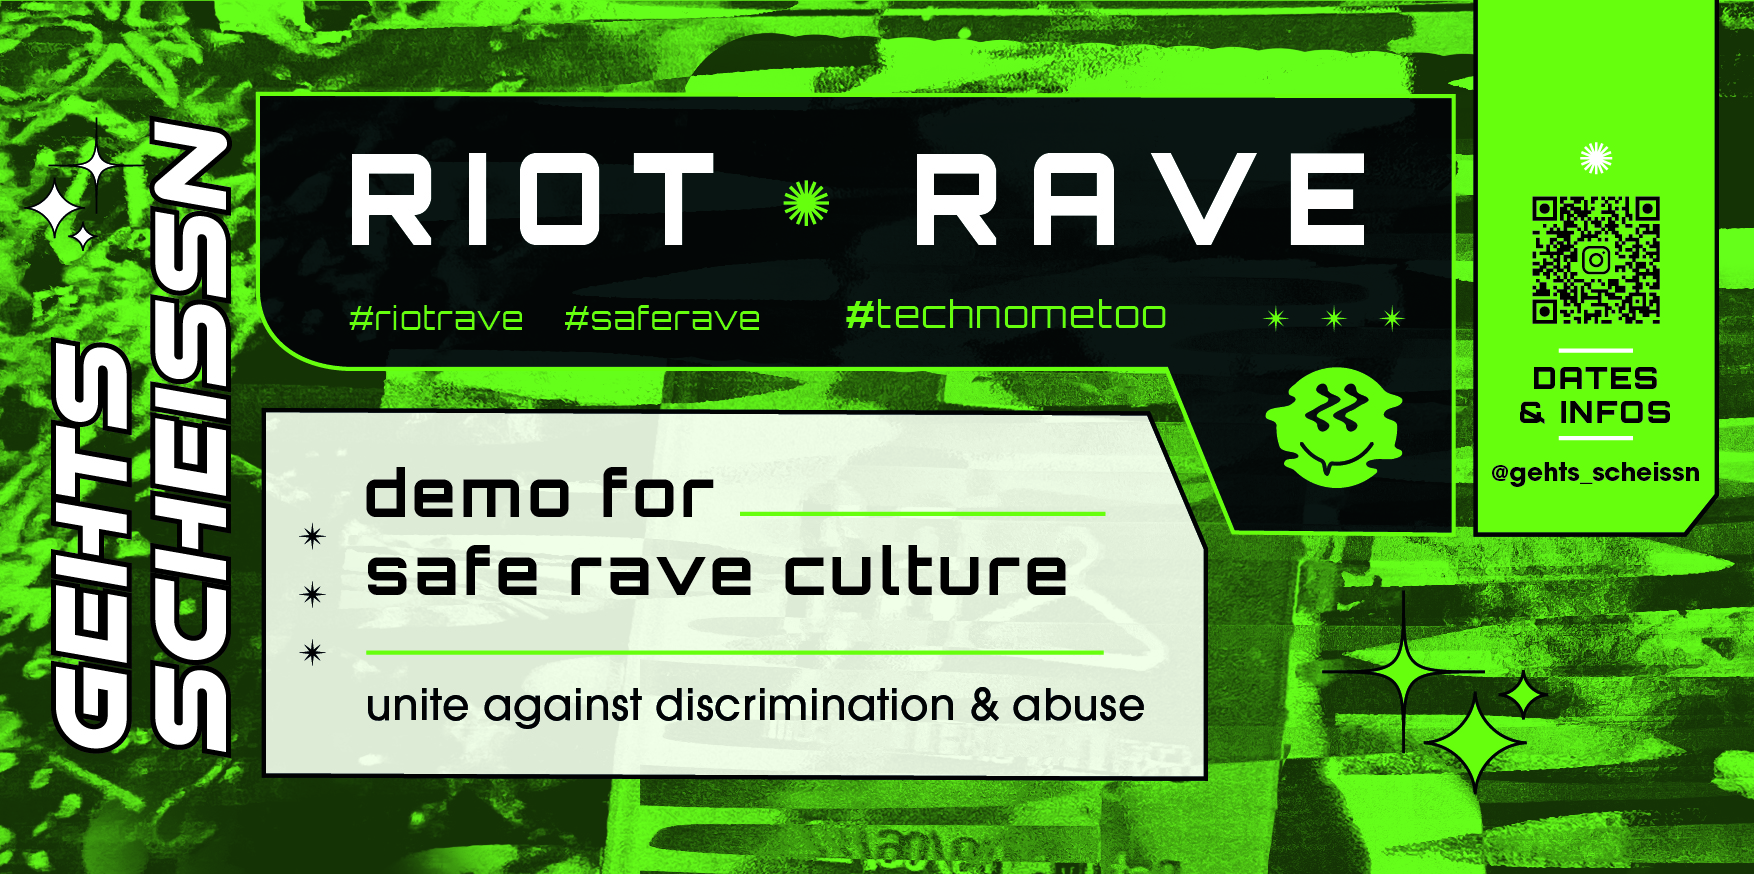 RIOT * RAVE für eine sichere Clubkultur